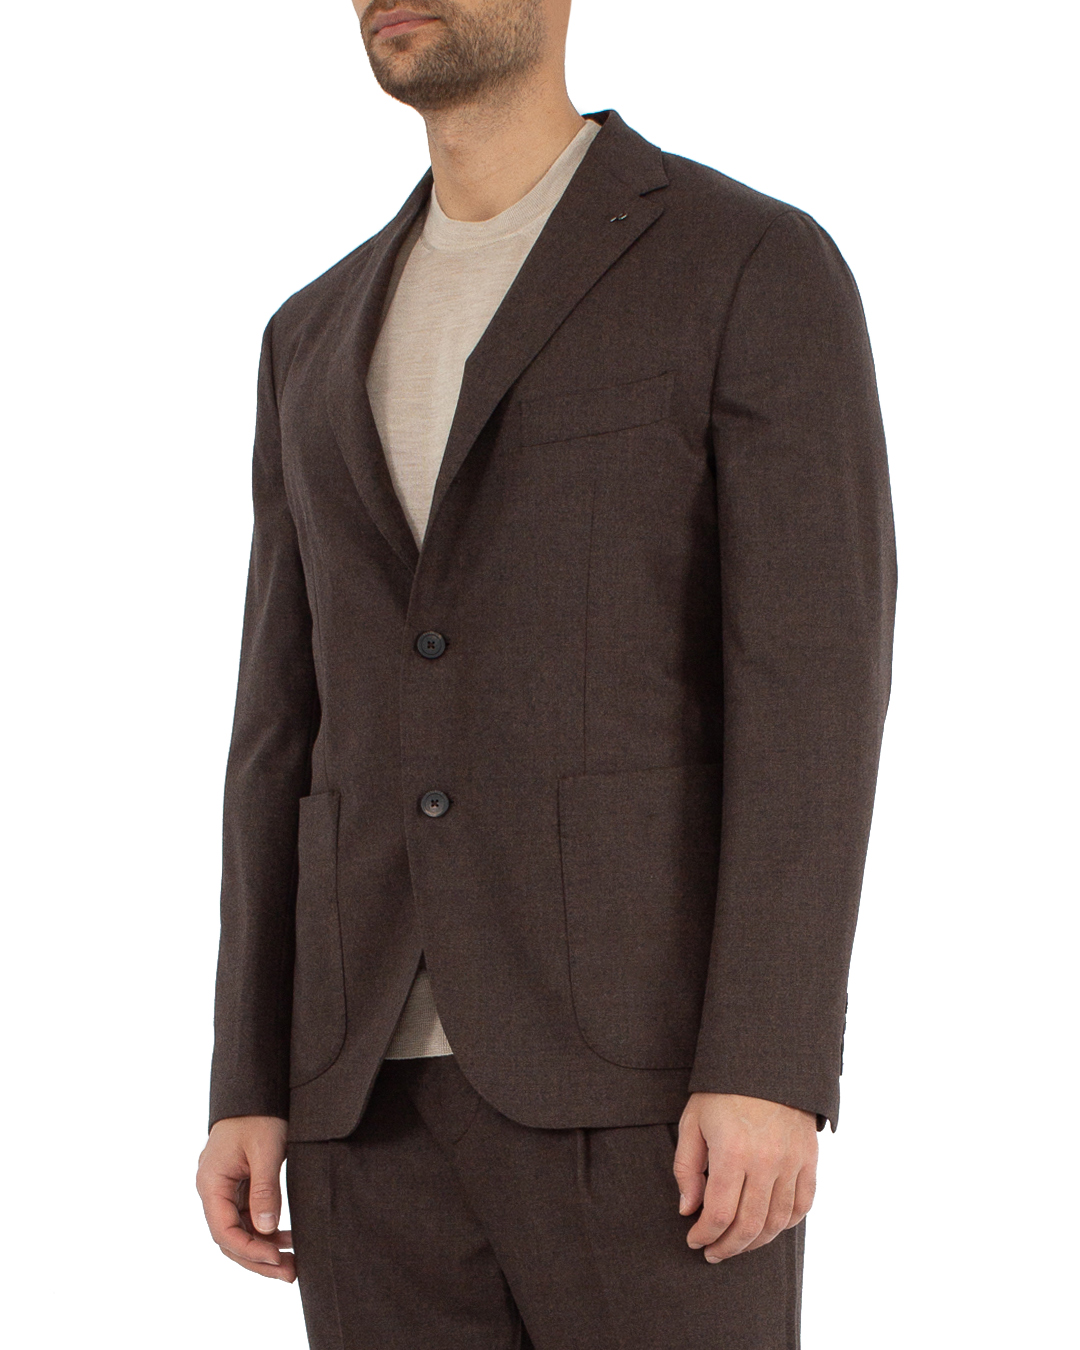 пиджак Peserico R51509 коричневый 54, размер 54 - фото 3